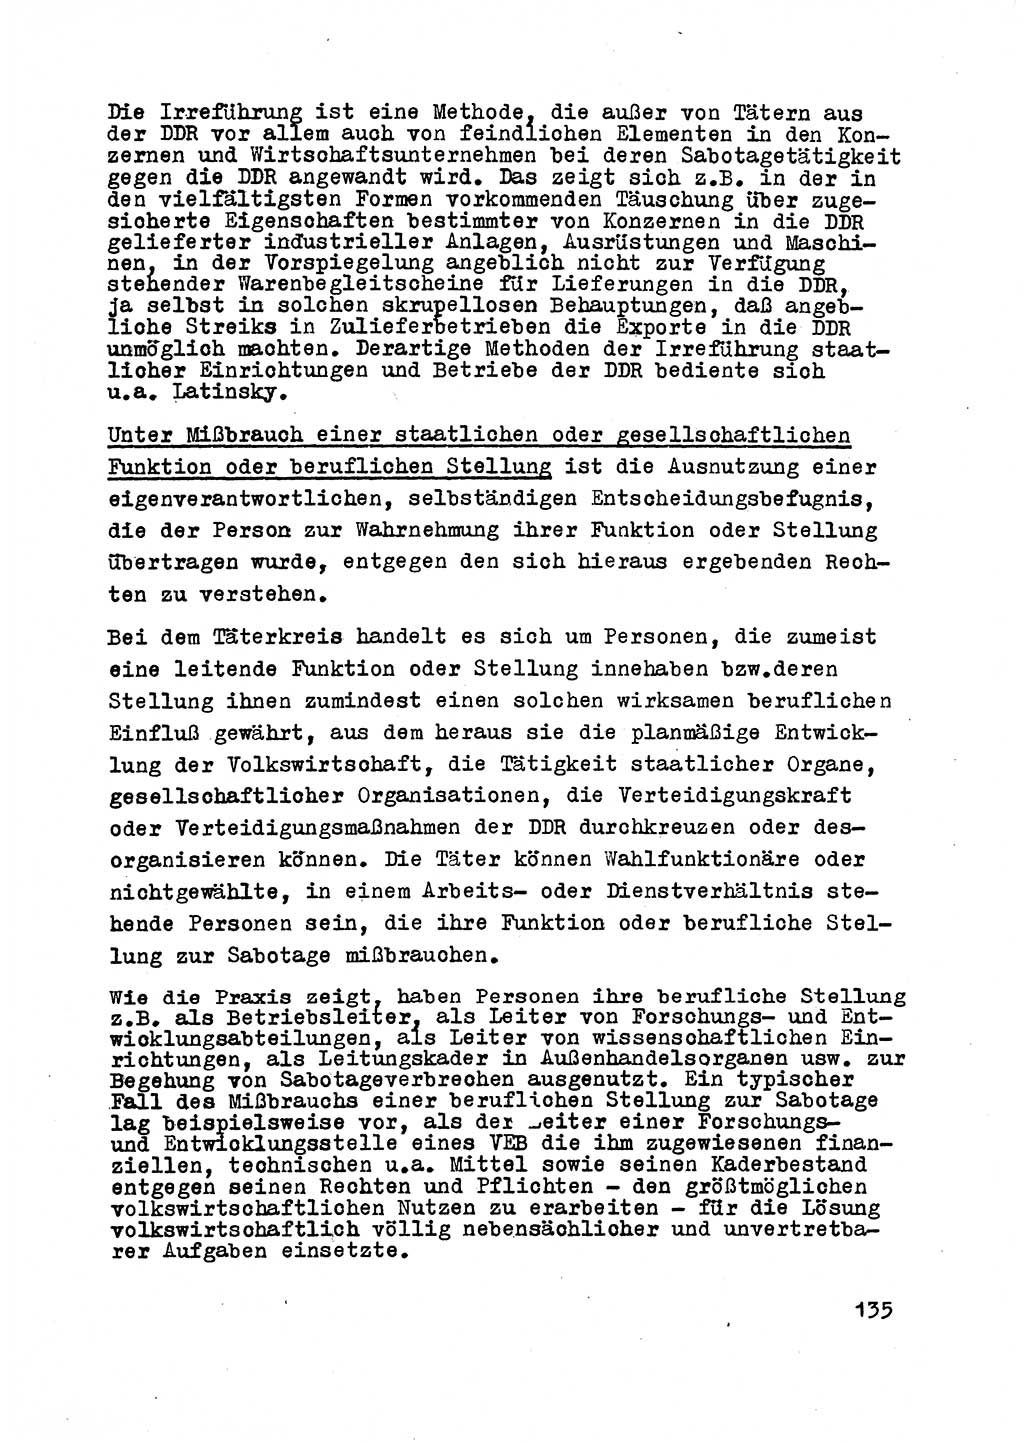 Strafrecht der DDR (Deutsche Demokratische Republik), Besonderer Teil, Lehrmaterial, Heft 2 1969, Seite 135 (Strafr. DDR BT Lehrmat. H. 2 1969, S. 135)